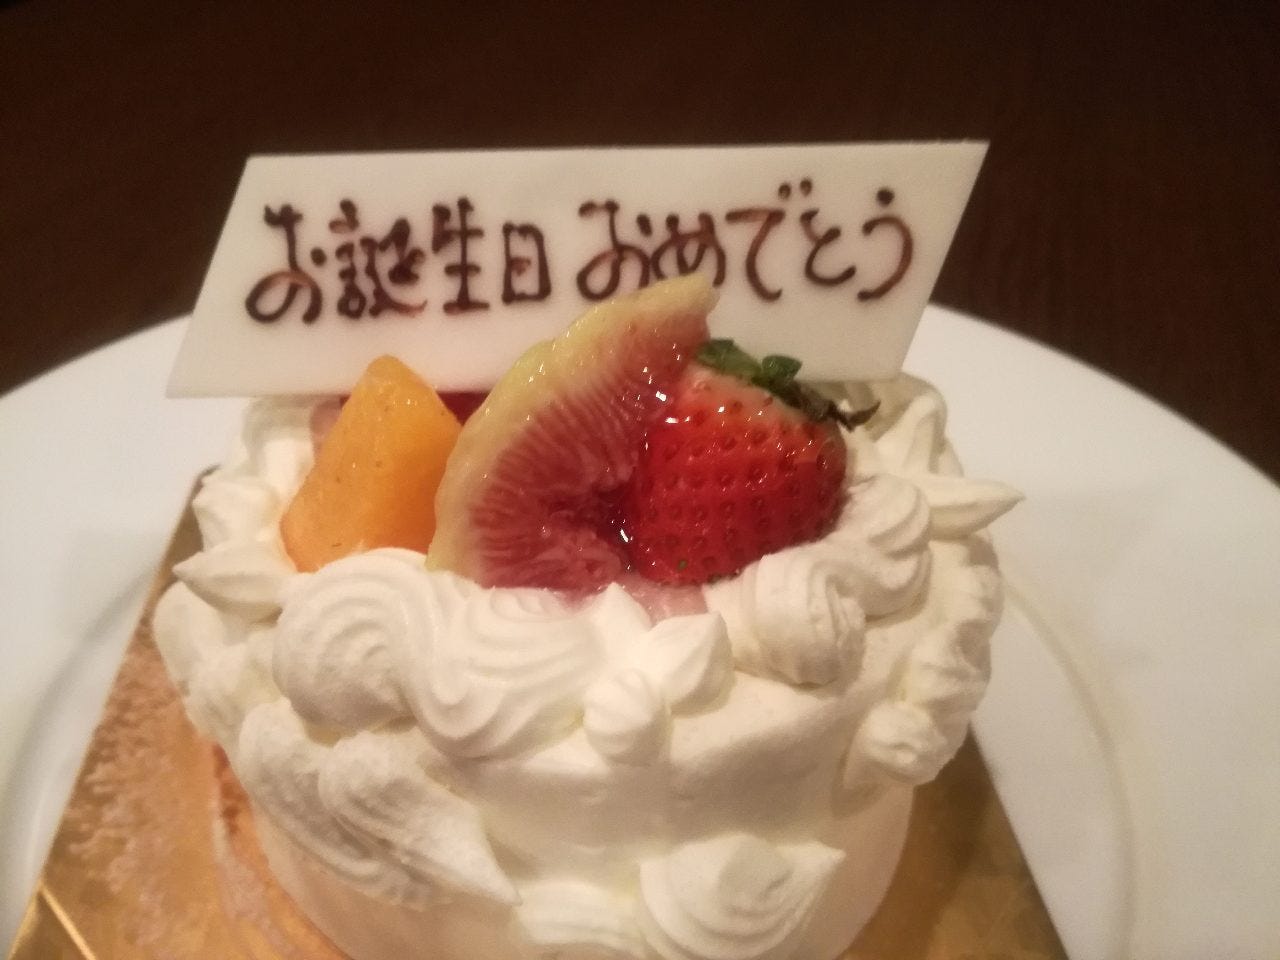 記念日ケーキ(ローソク付き)